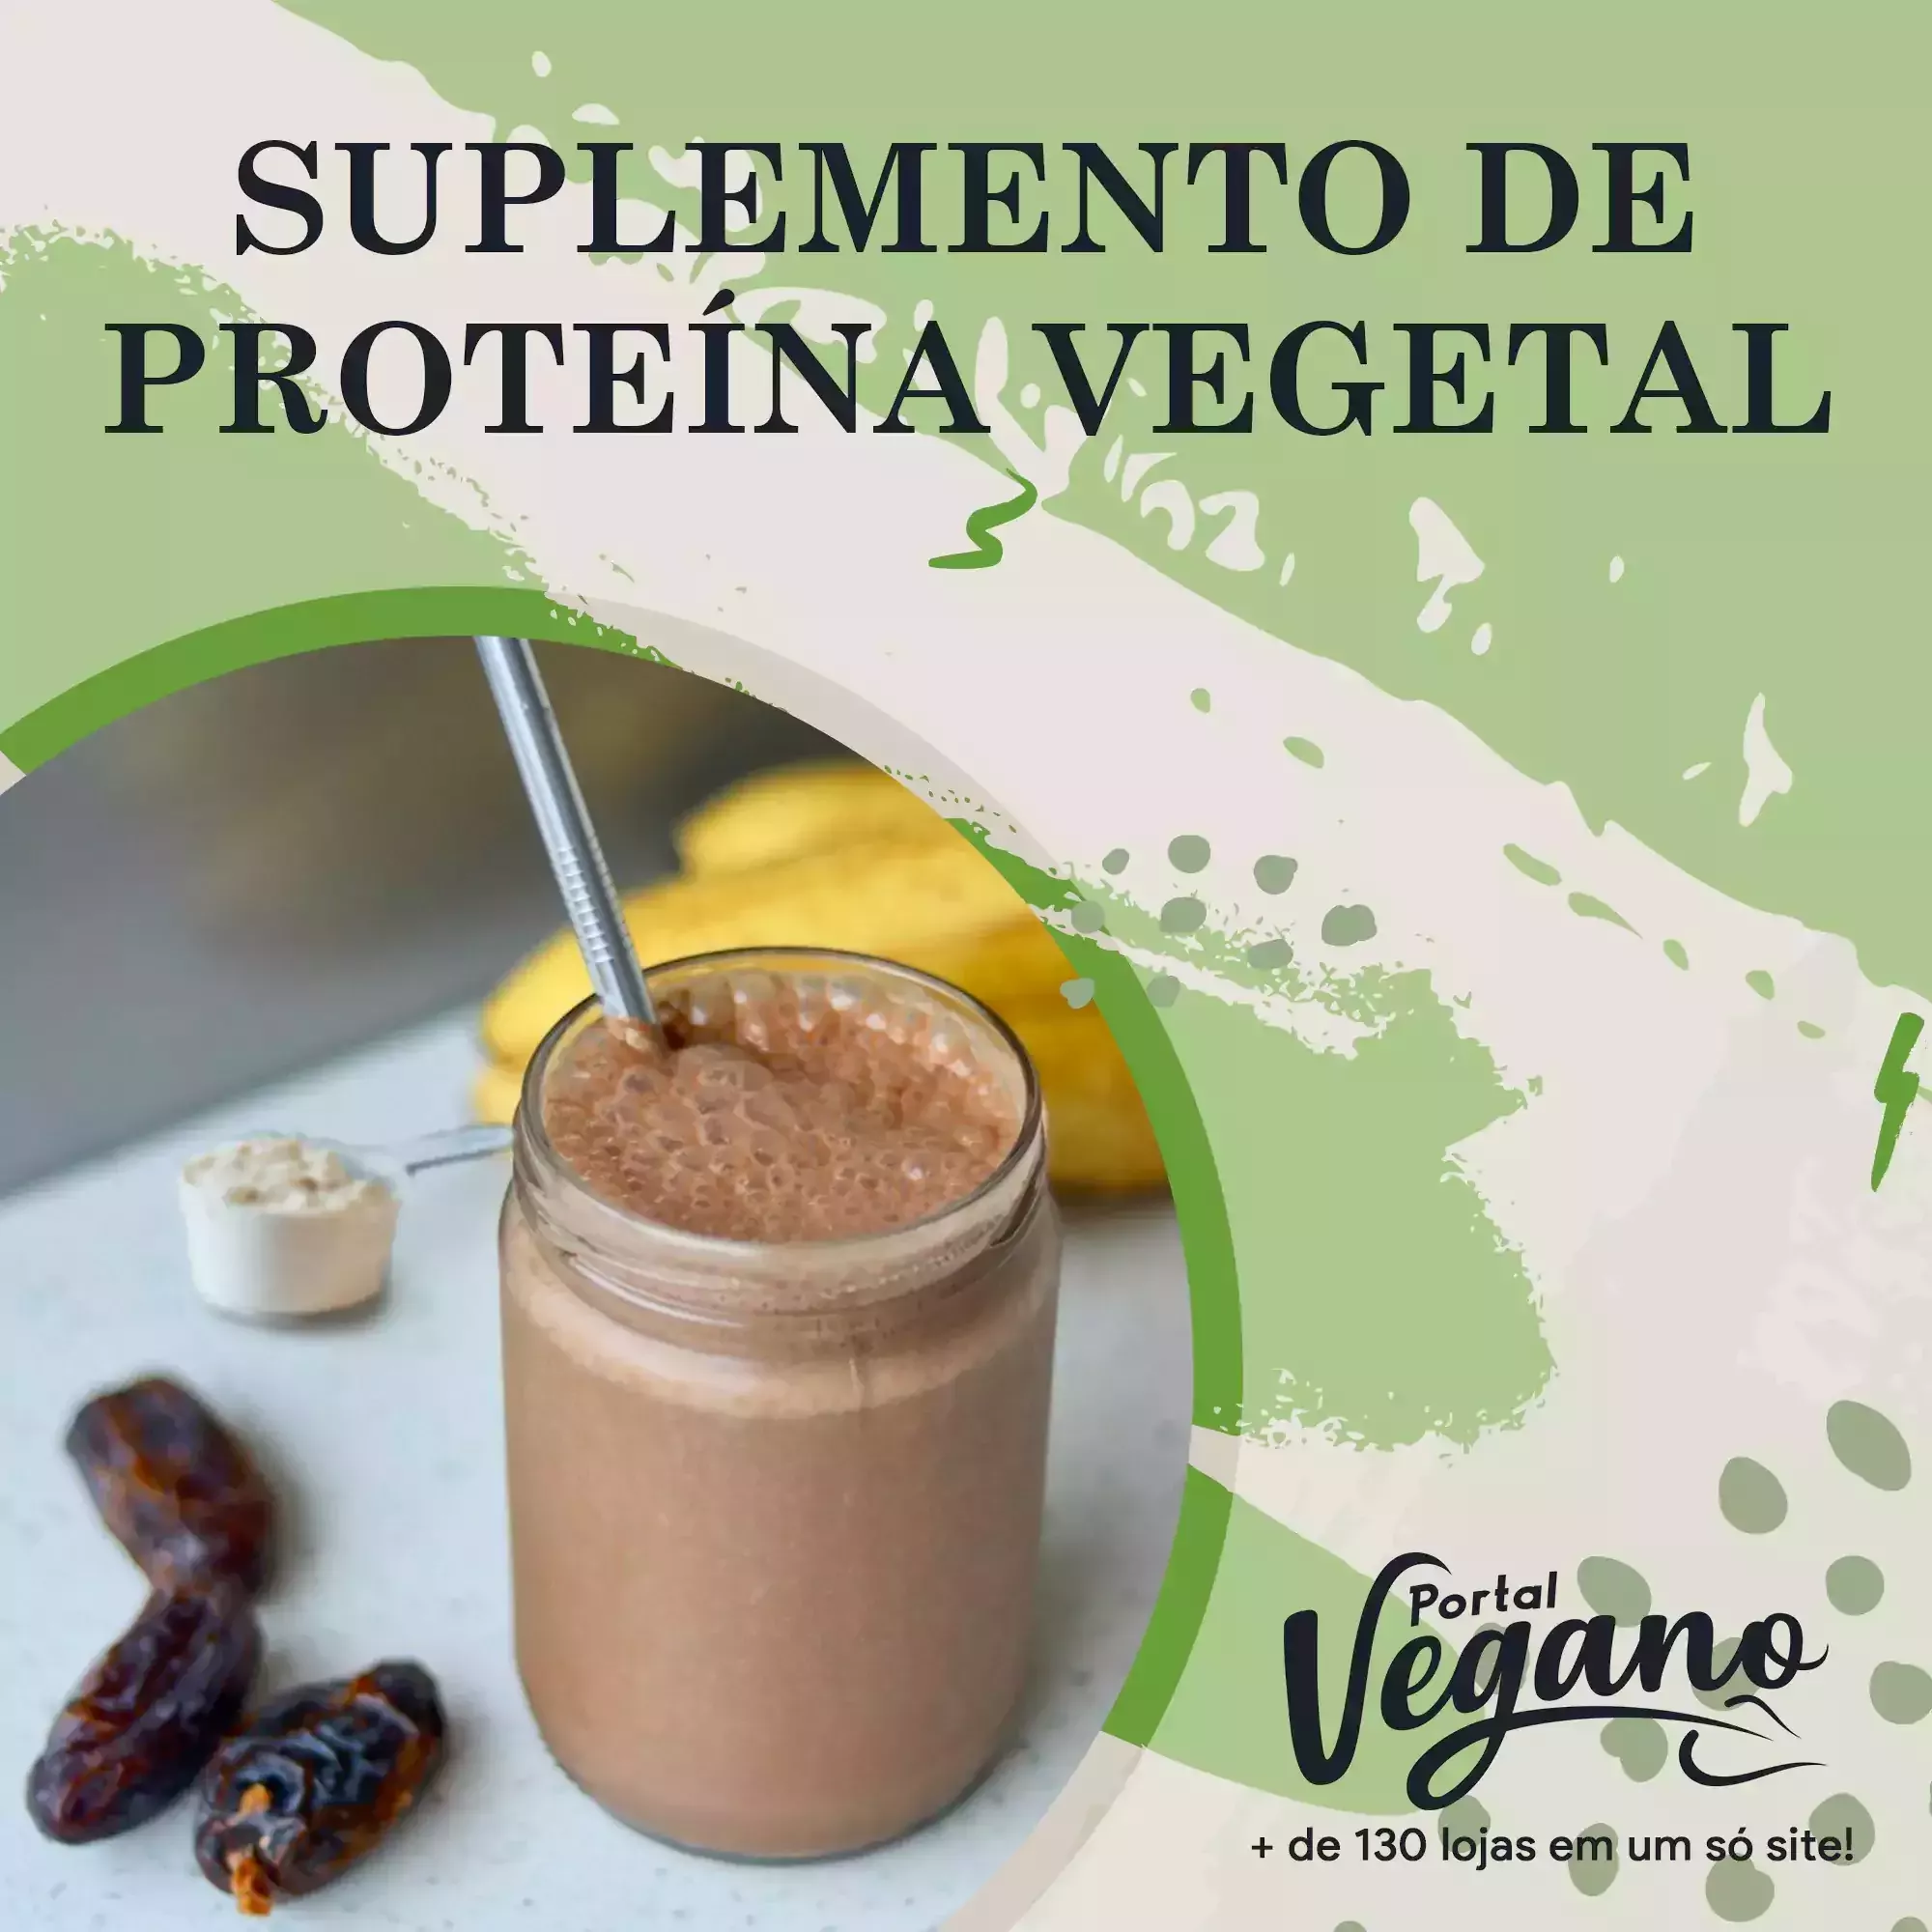 Suplemento de proteína vegetal - Conheça os benefícios da proteína vegana